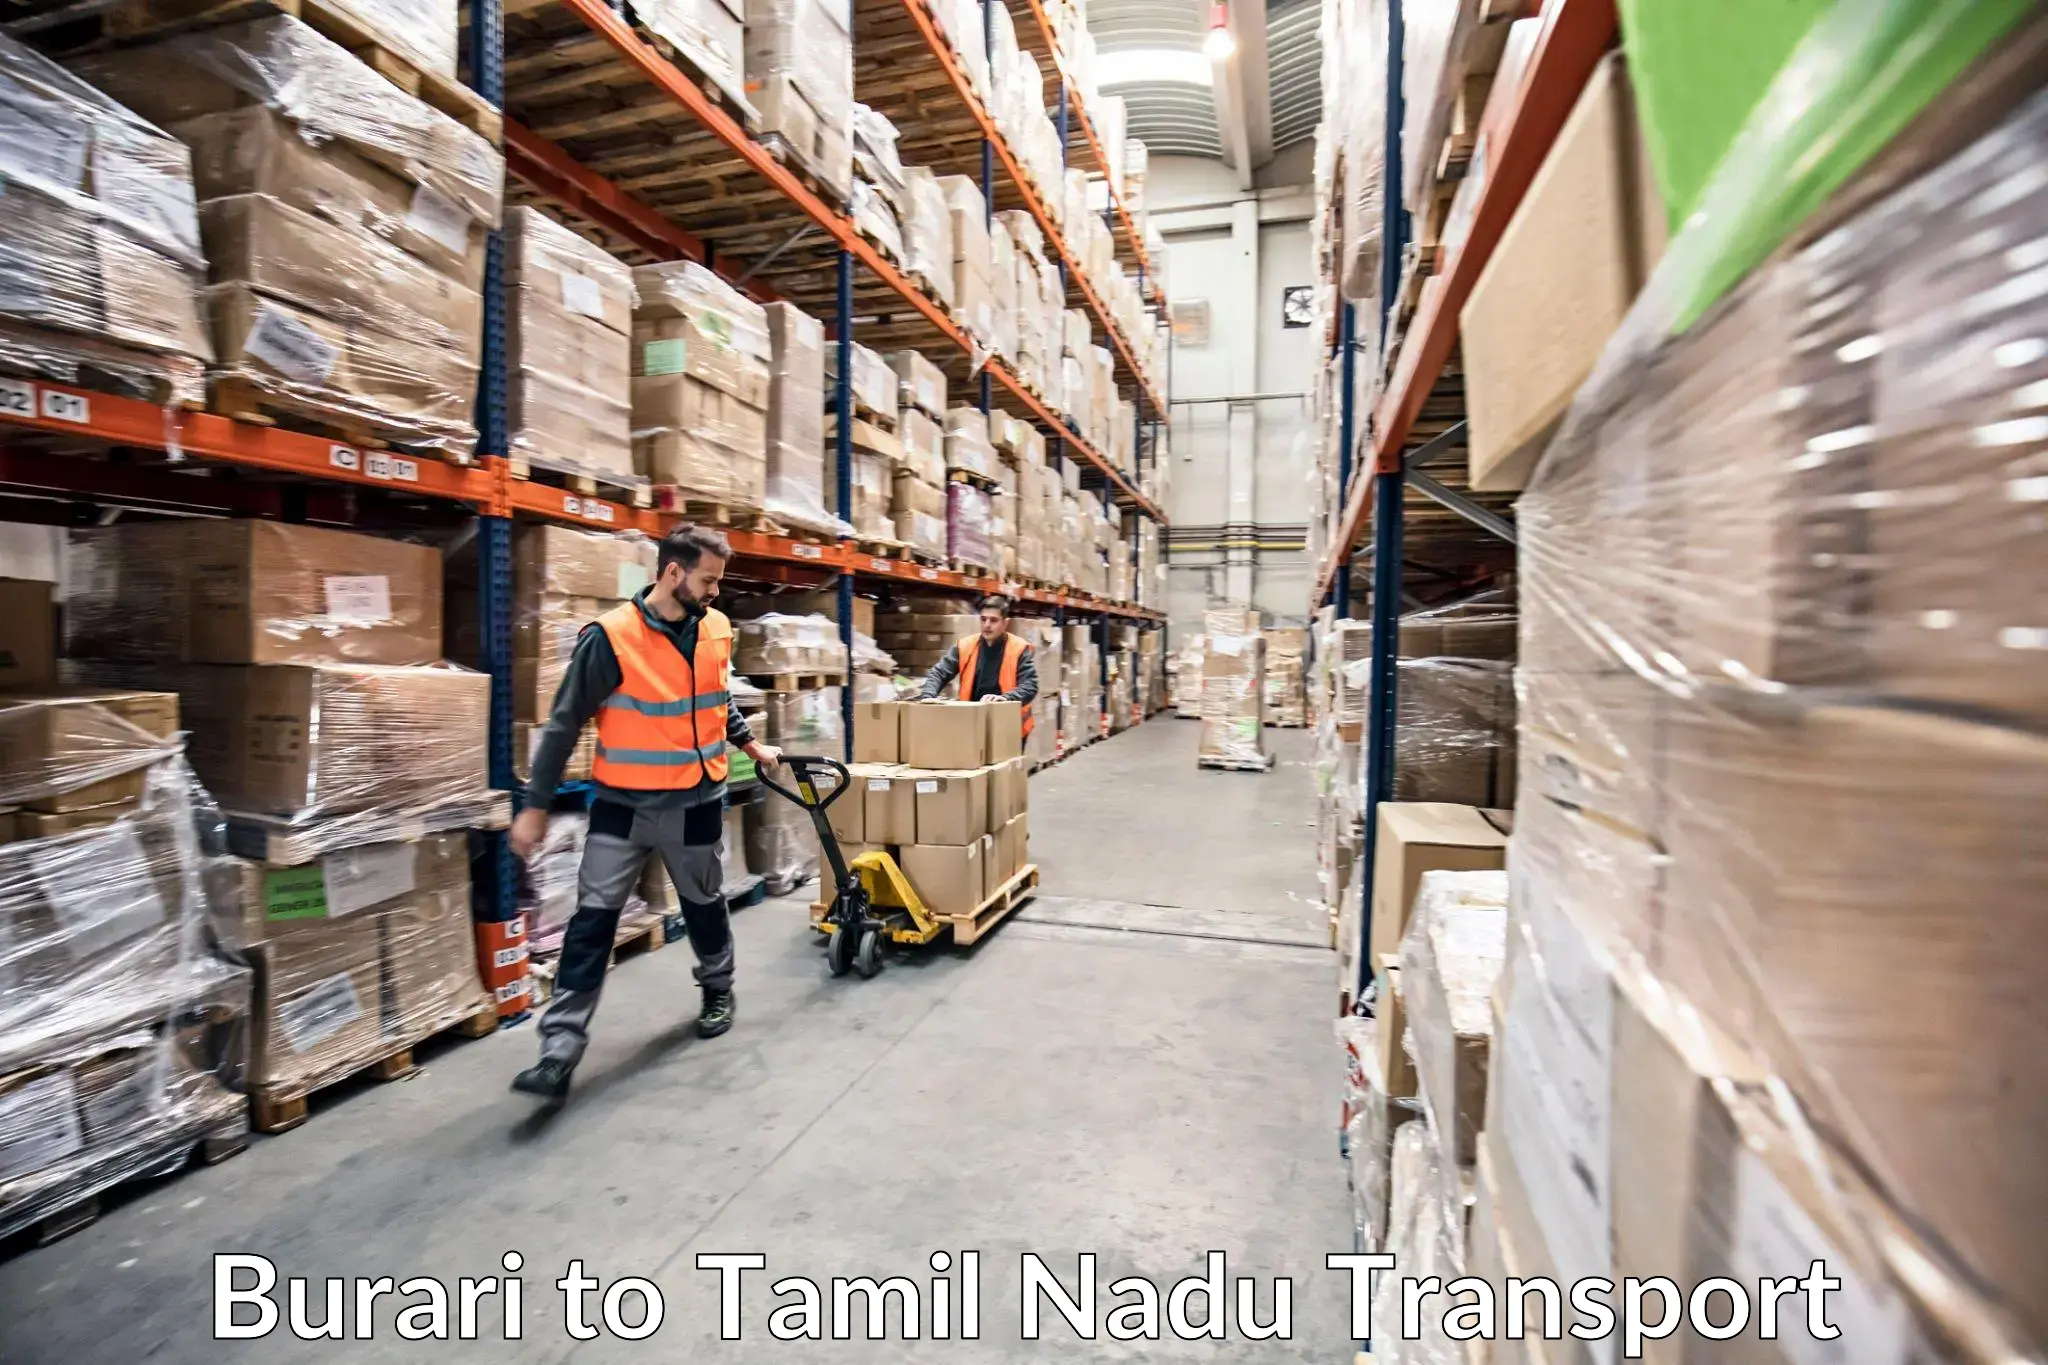 Container transport service Burari to Tiruchirappalli